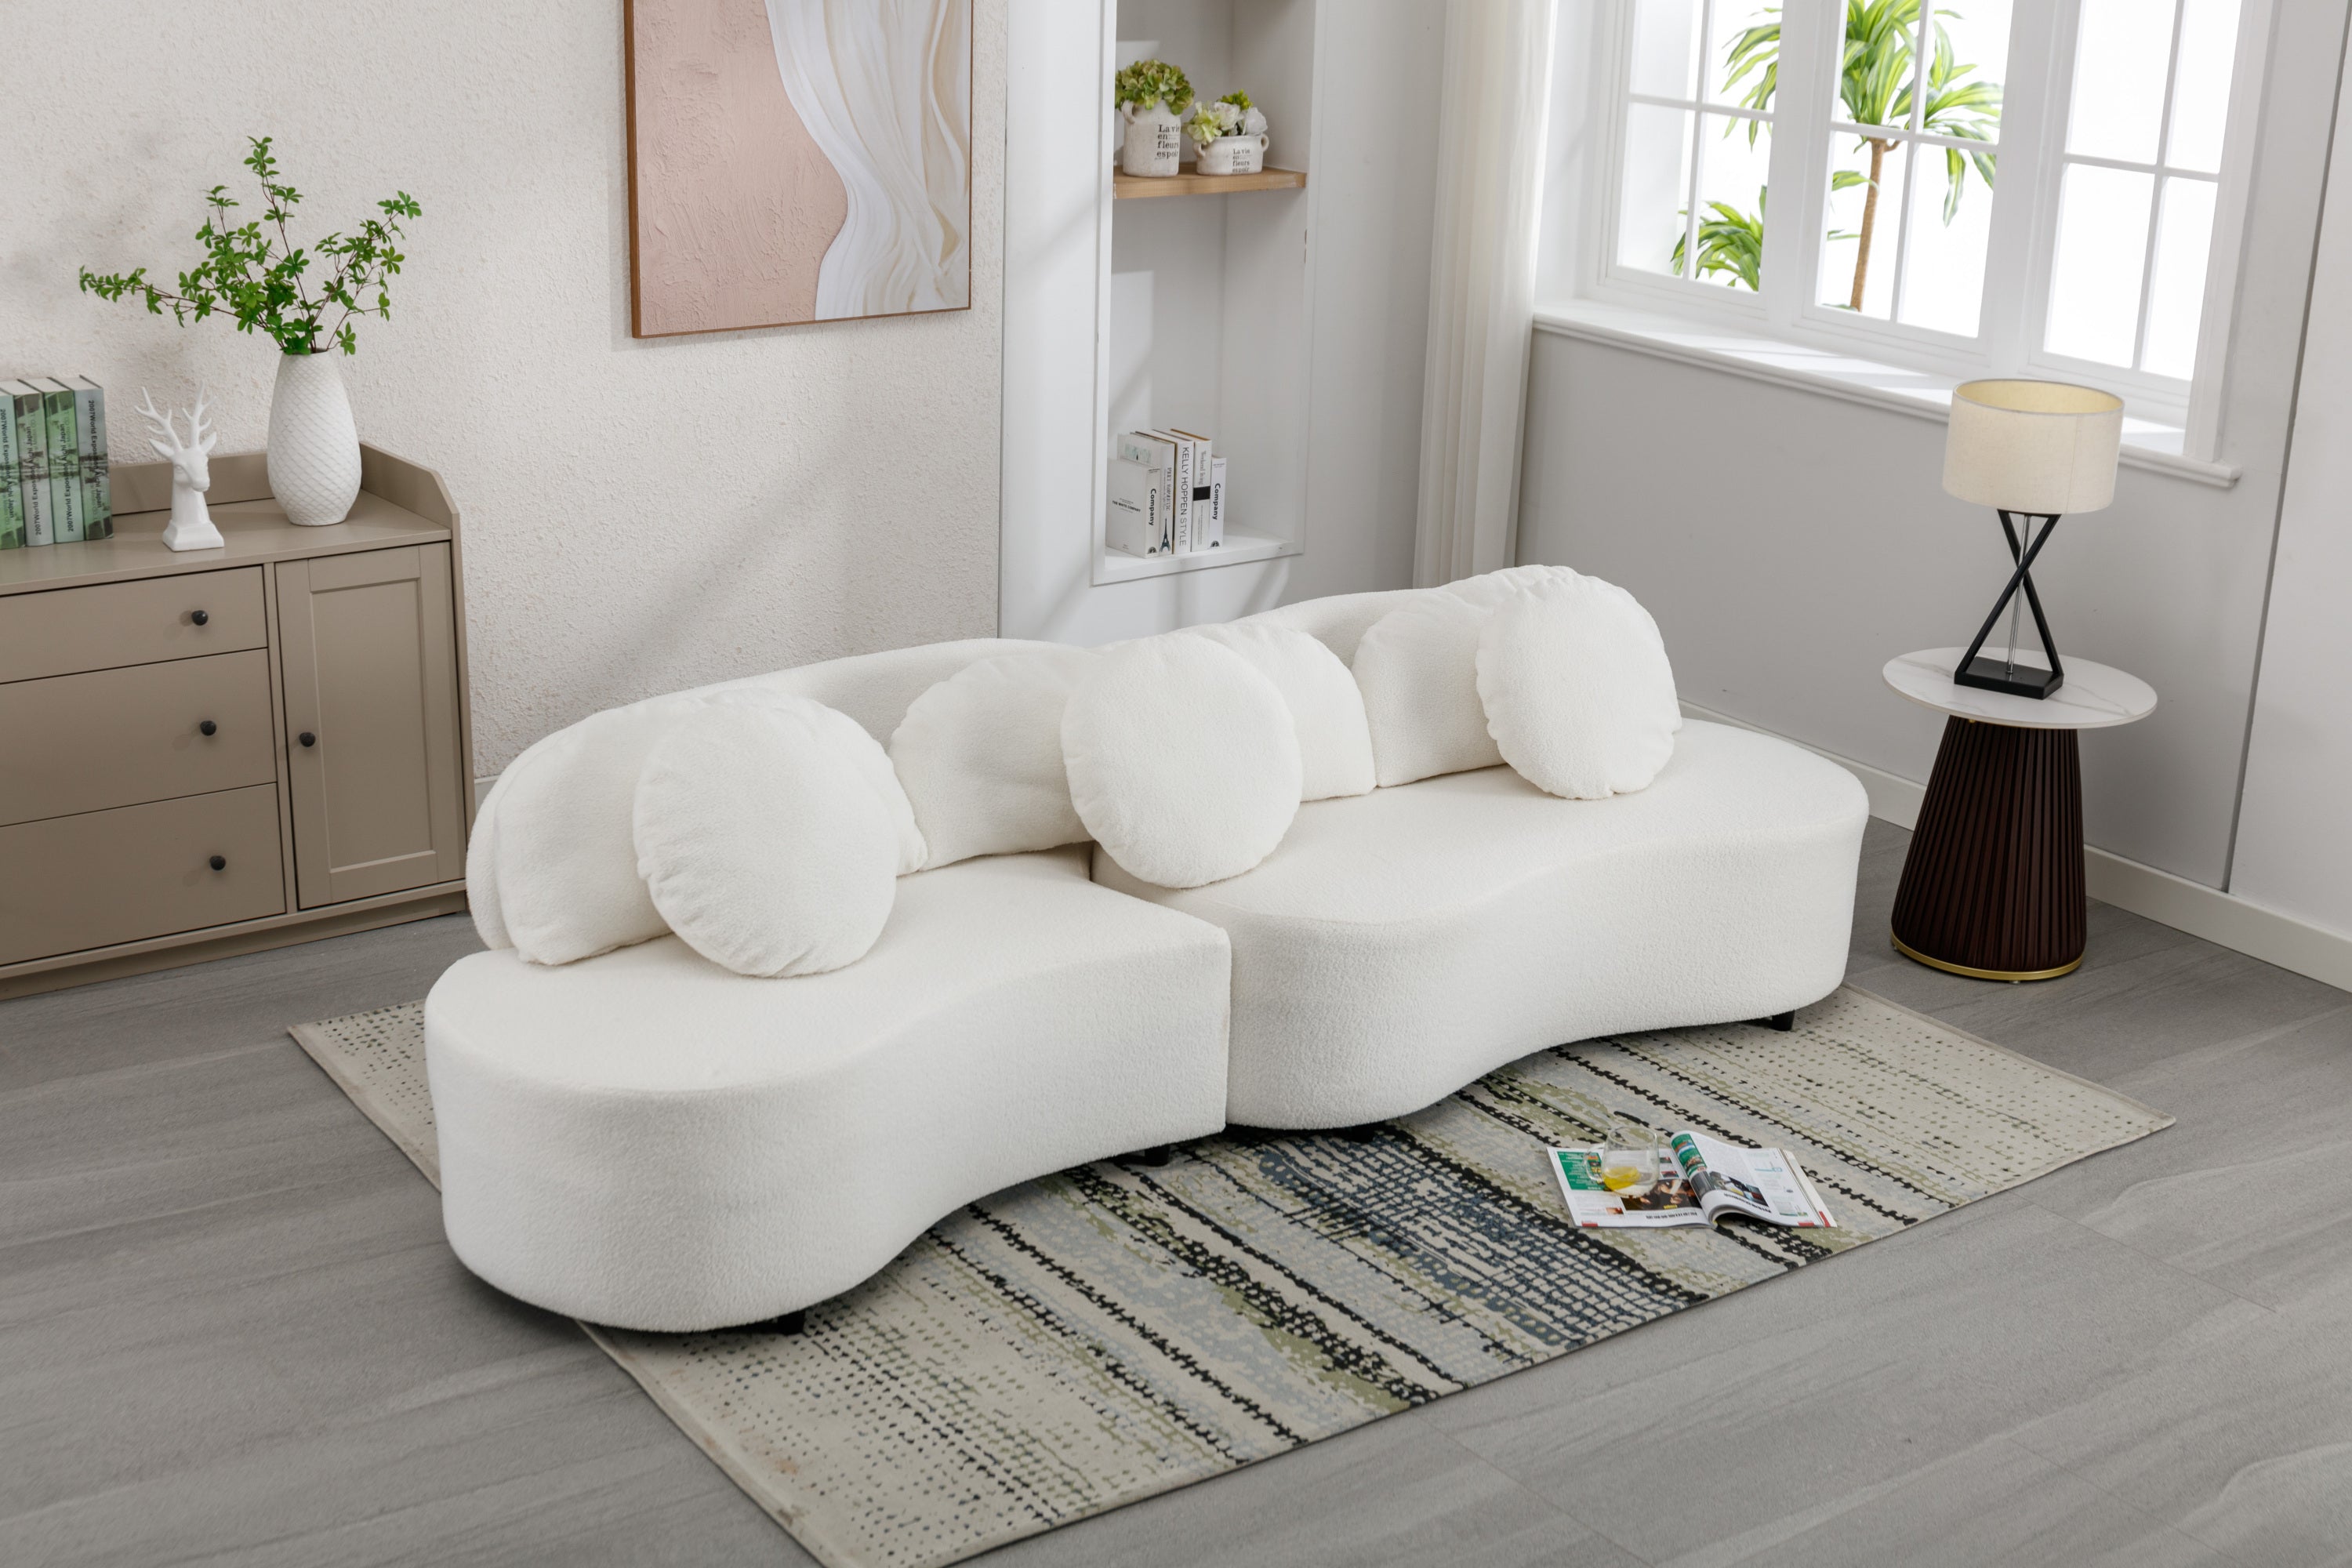 103.9" Modern Living Room Sofa Velvet Upholstered Couch Furniture - Beige